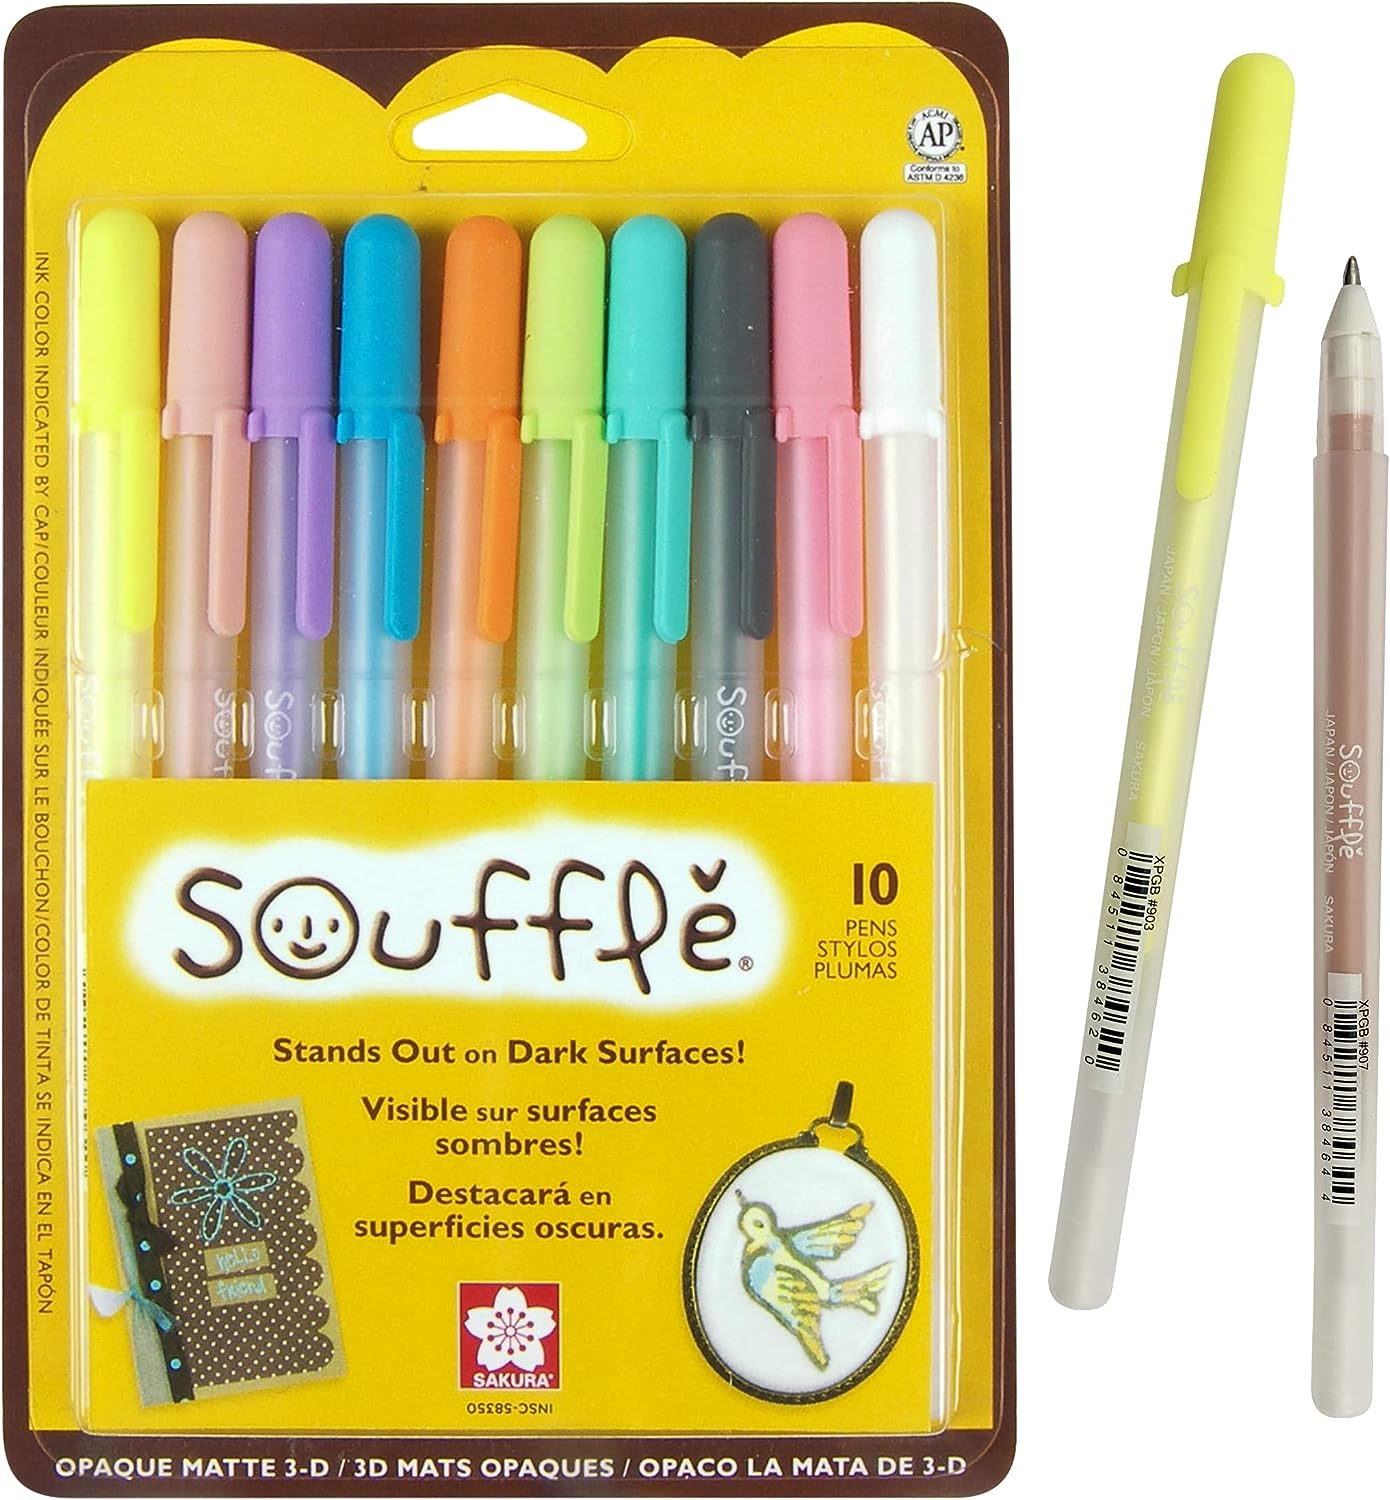 Sakura Souffle Pen Set